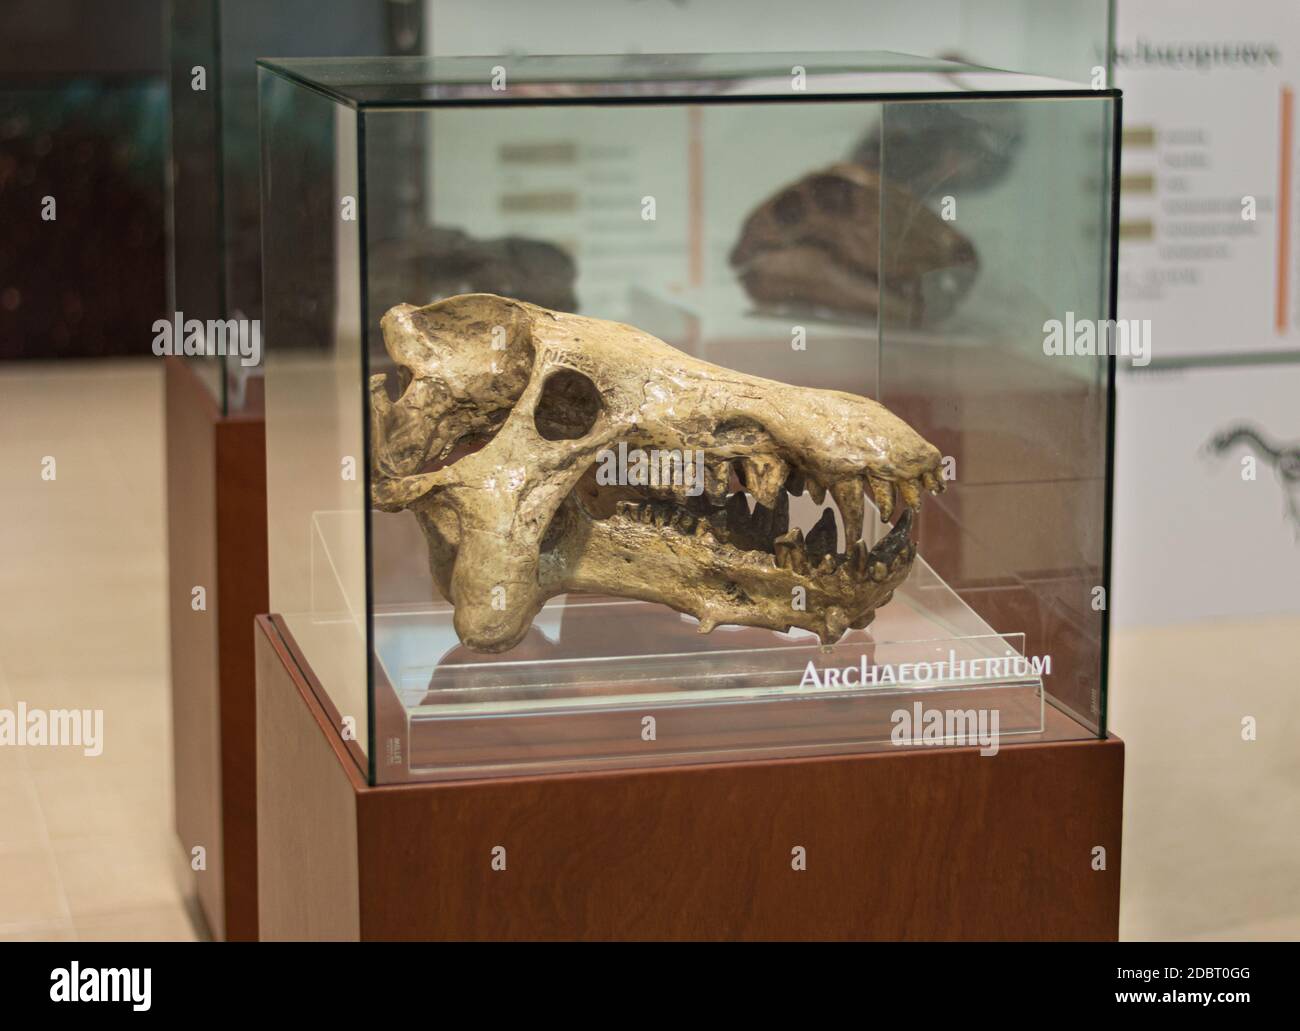 Archaeotherium cráneo fósil en exhibición en el Museo del Cráter Chicxulub en Yucatán, México. Foto de stock